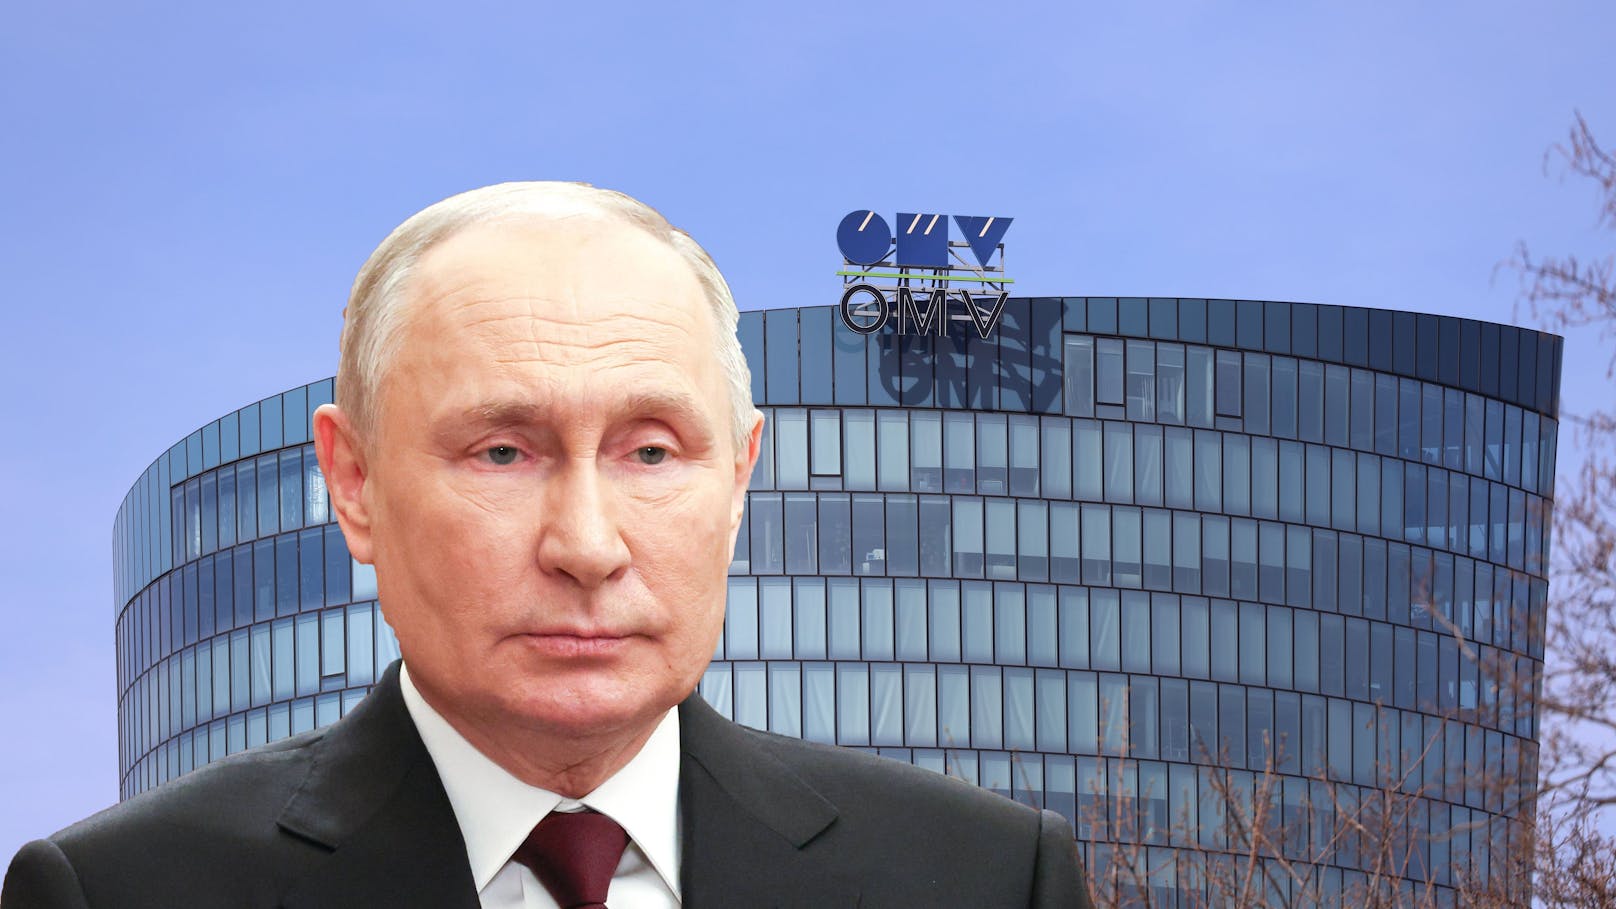 Dekret unterzeichnet – Putin krallt sich OMV-Geschäfte